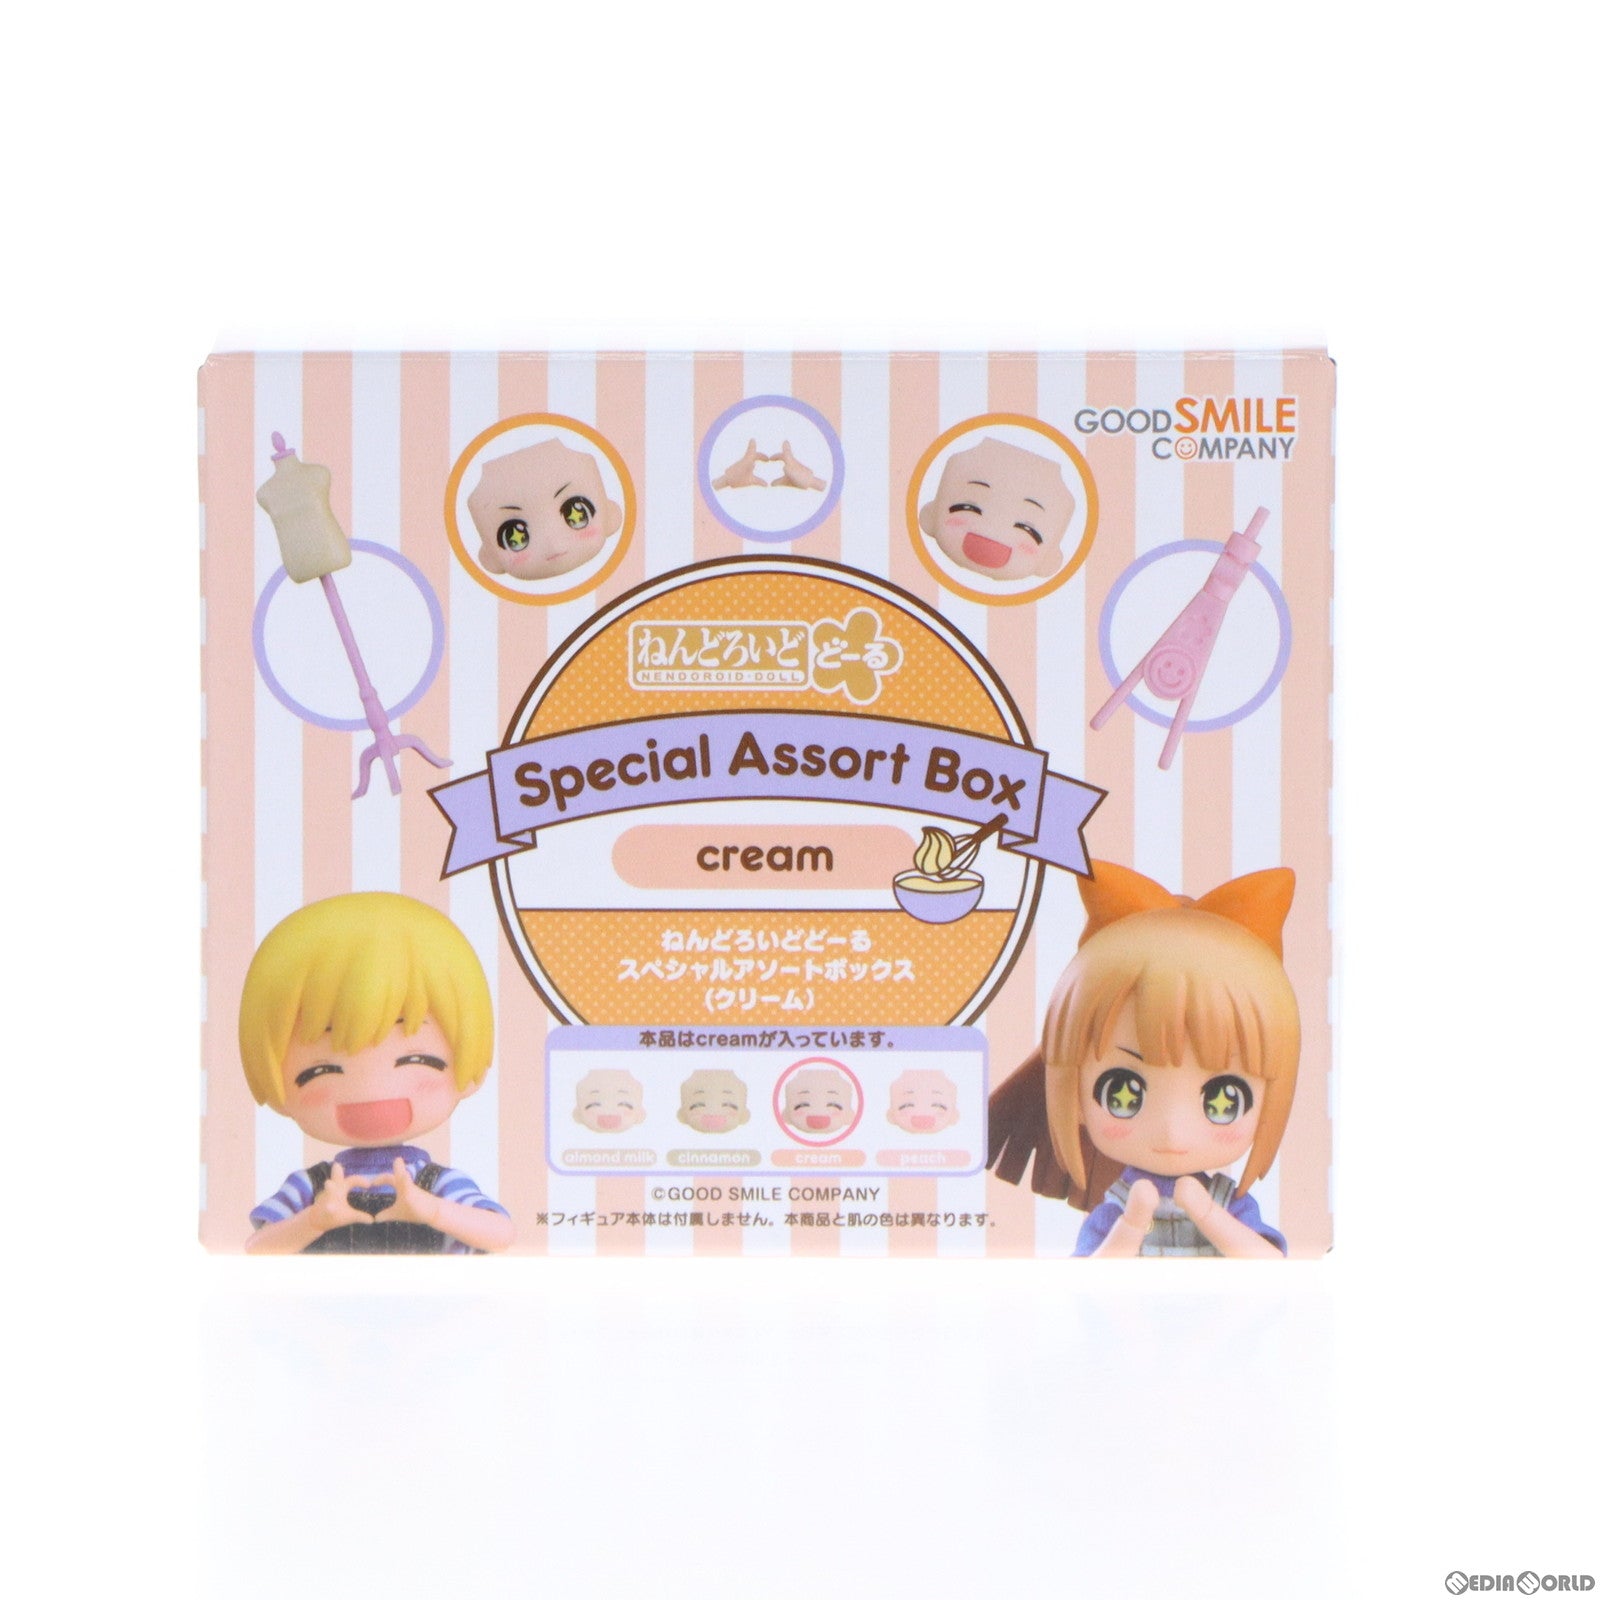 【中古即納】[FIG]ねんどろいどどーる Special Assort Box(cream) フィギュア用アクセサリ グッドスマイルカンパニー(20211120)